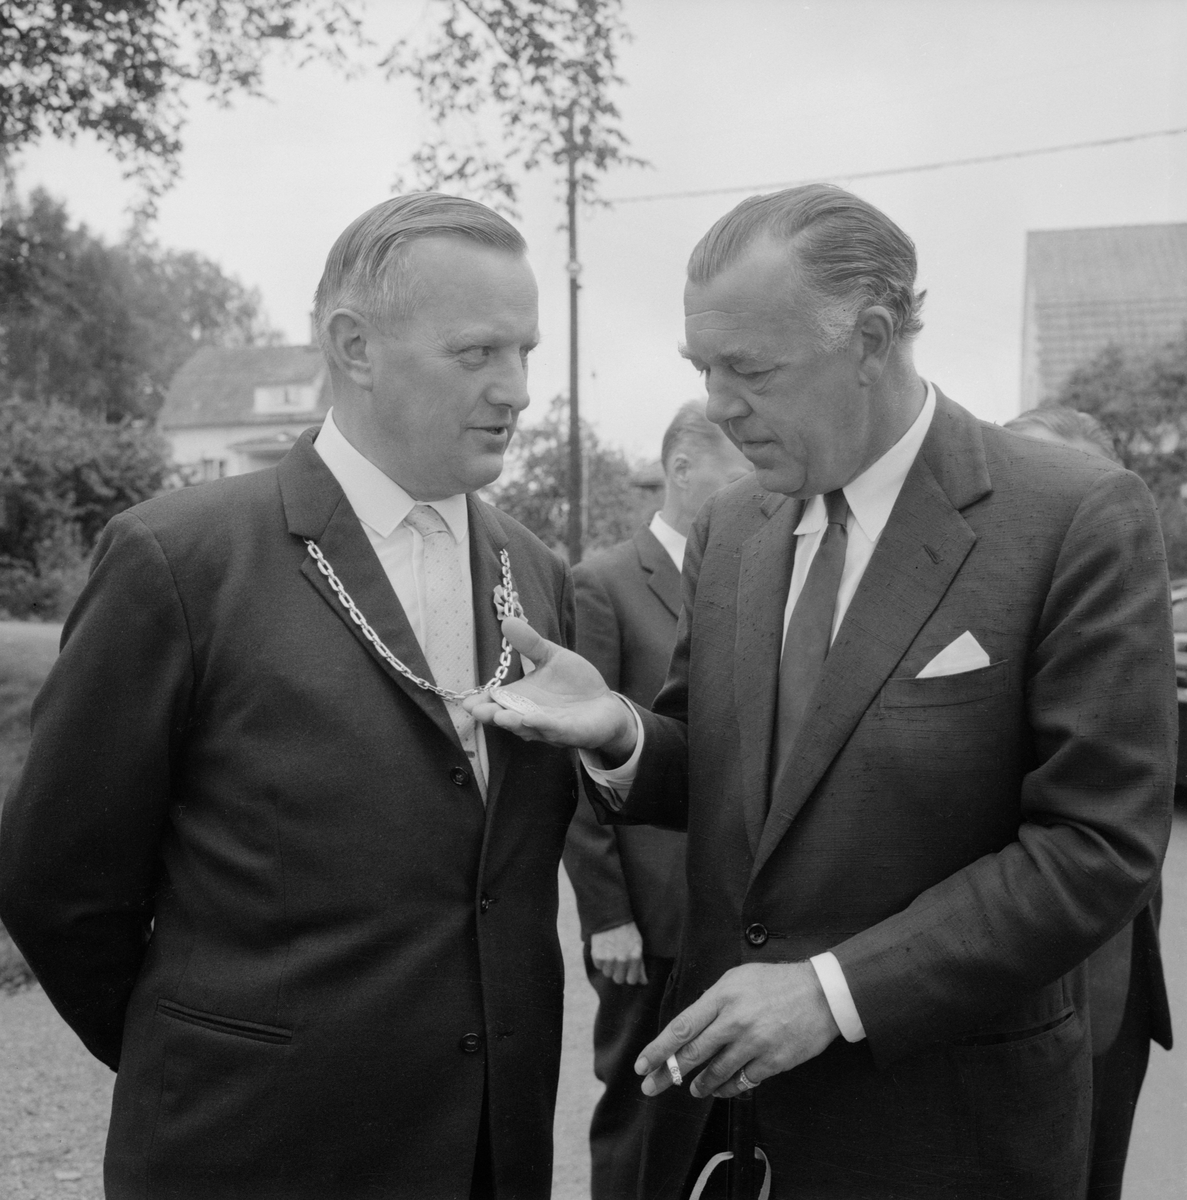 En till synes imponerad prins Bertil granskar borgmästarkedjan runt kommunalfullmäktigeordförande Lennart Eks hals. Ett ögonblick från Åtvidabergs 550-årsjubileum 1963.